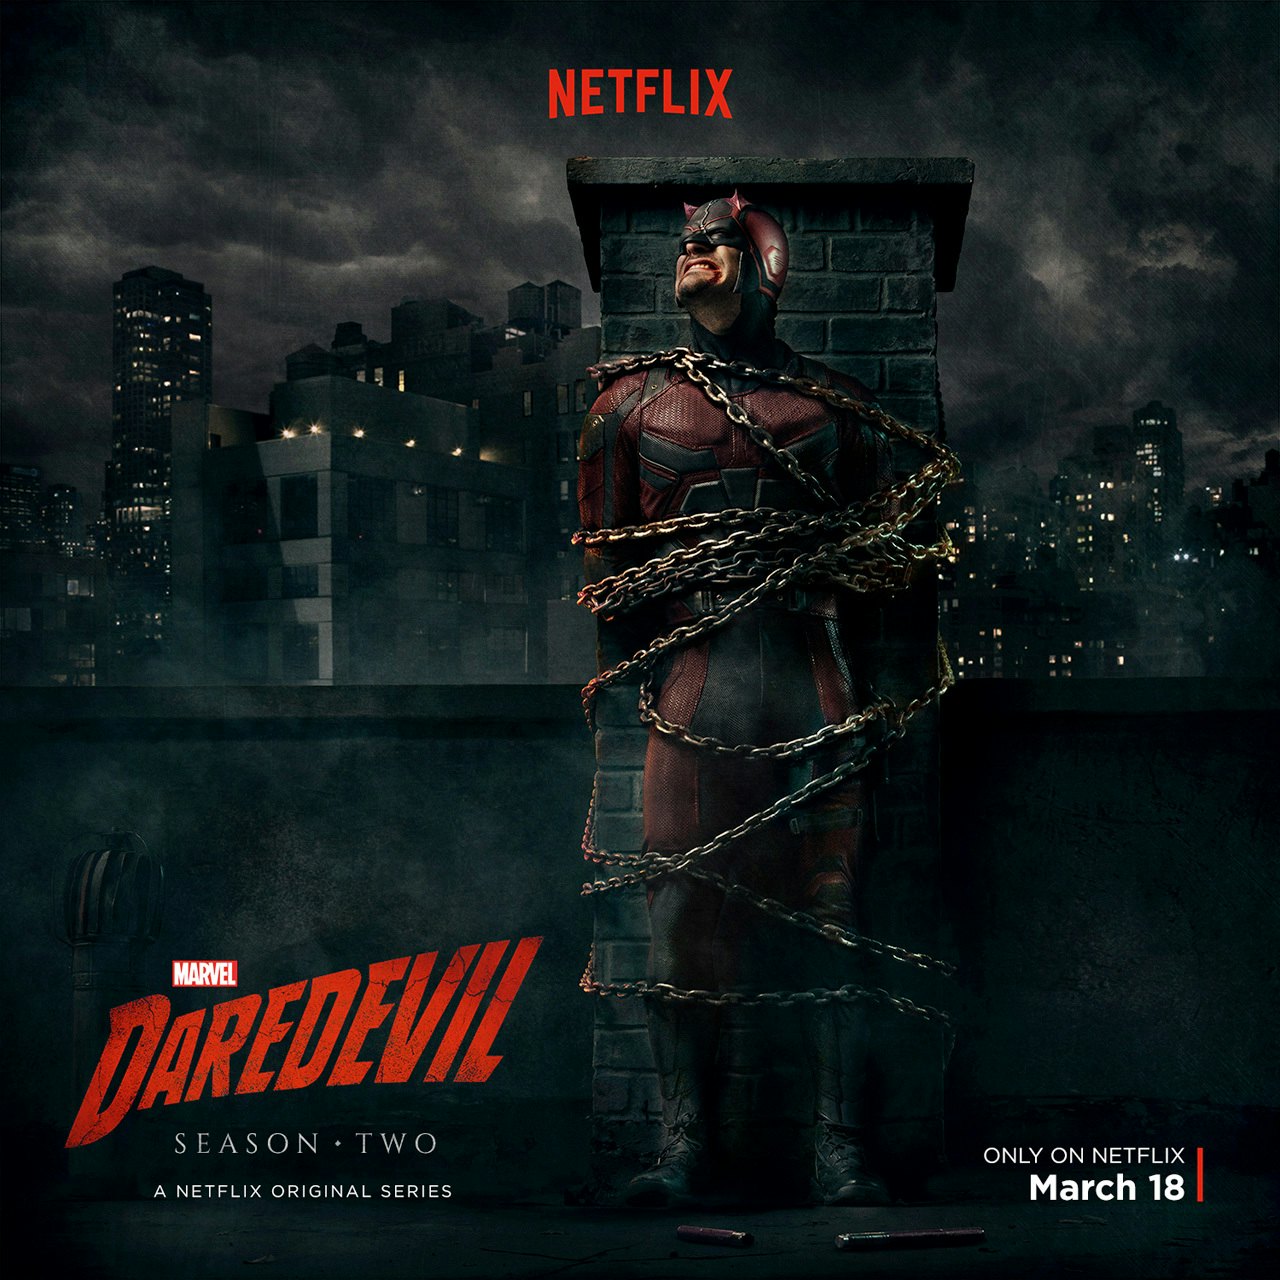 daredevil season 1 soundtrack